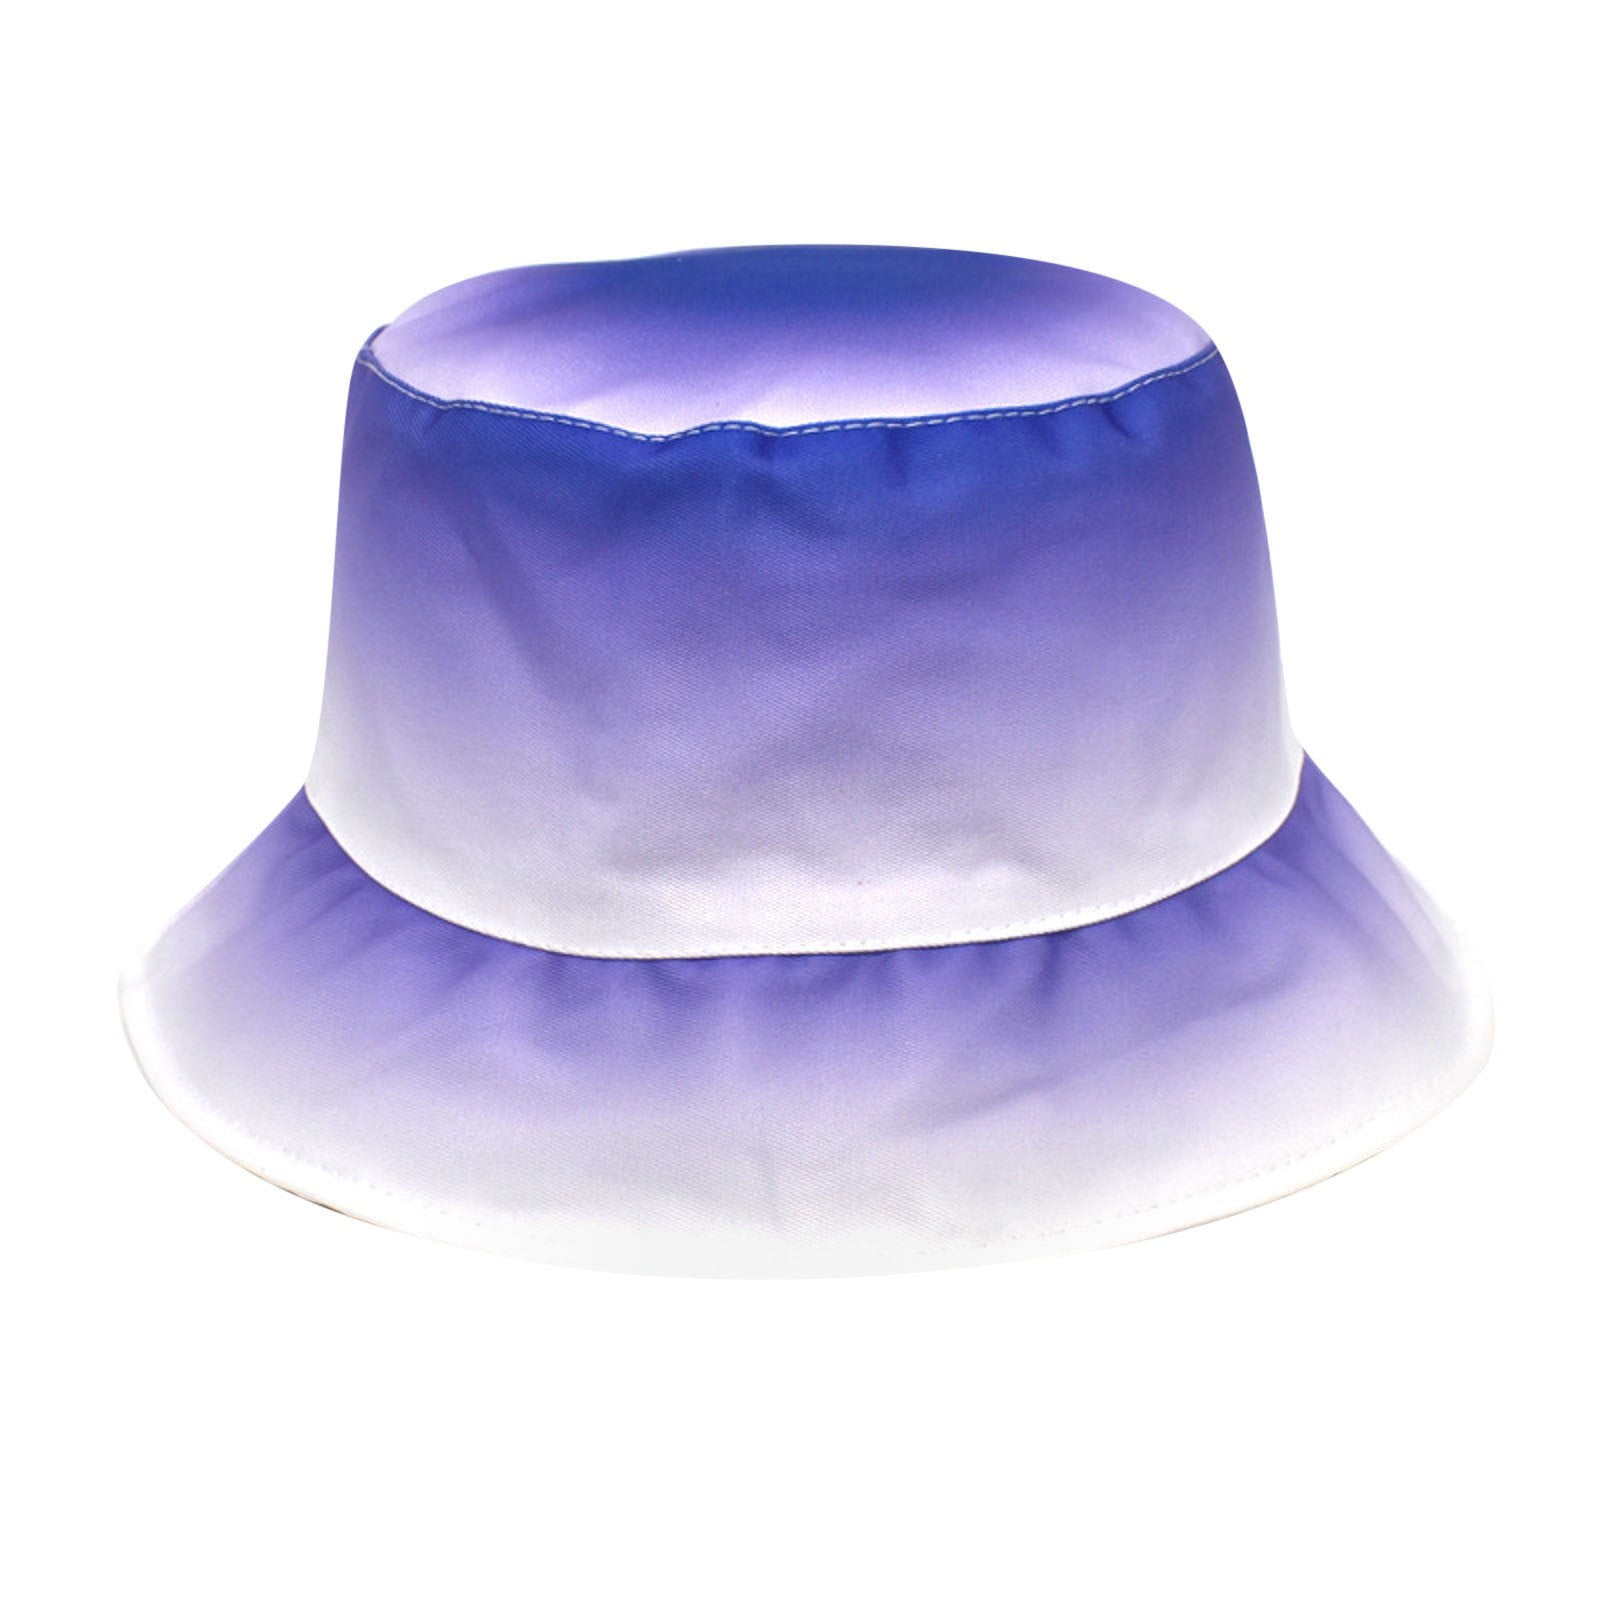 Fedora Hats Ties, Gradient Color Fedora